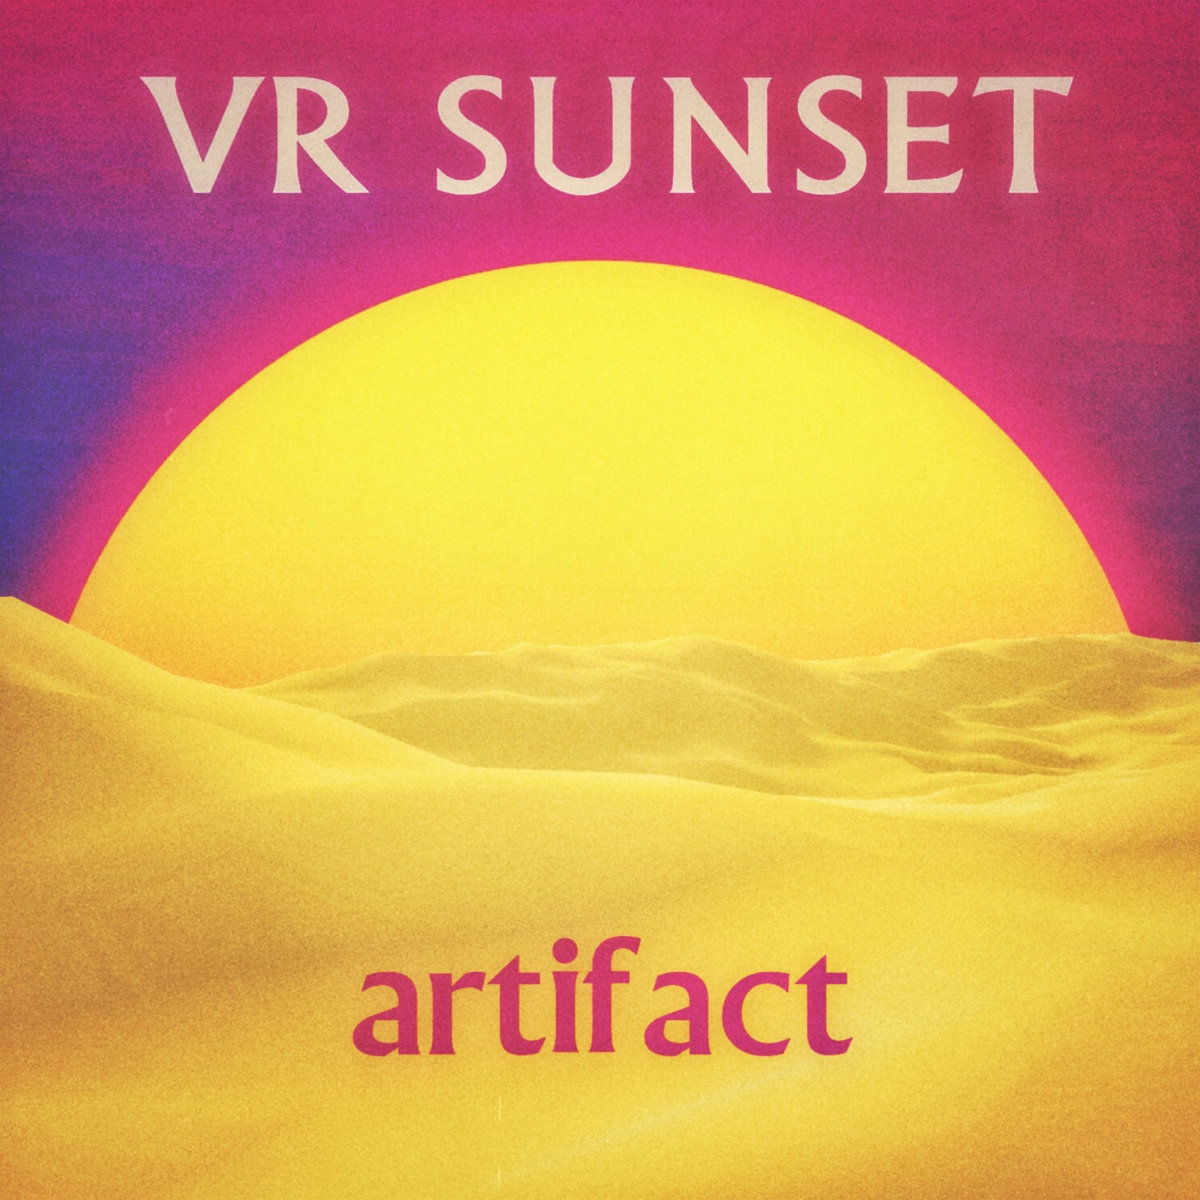 VR Sunset – Artifact